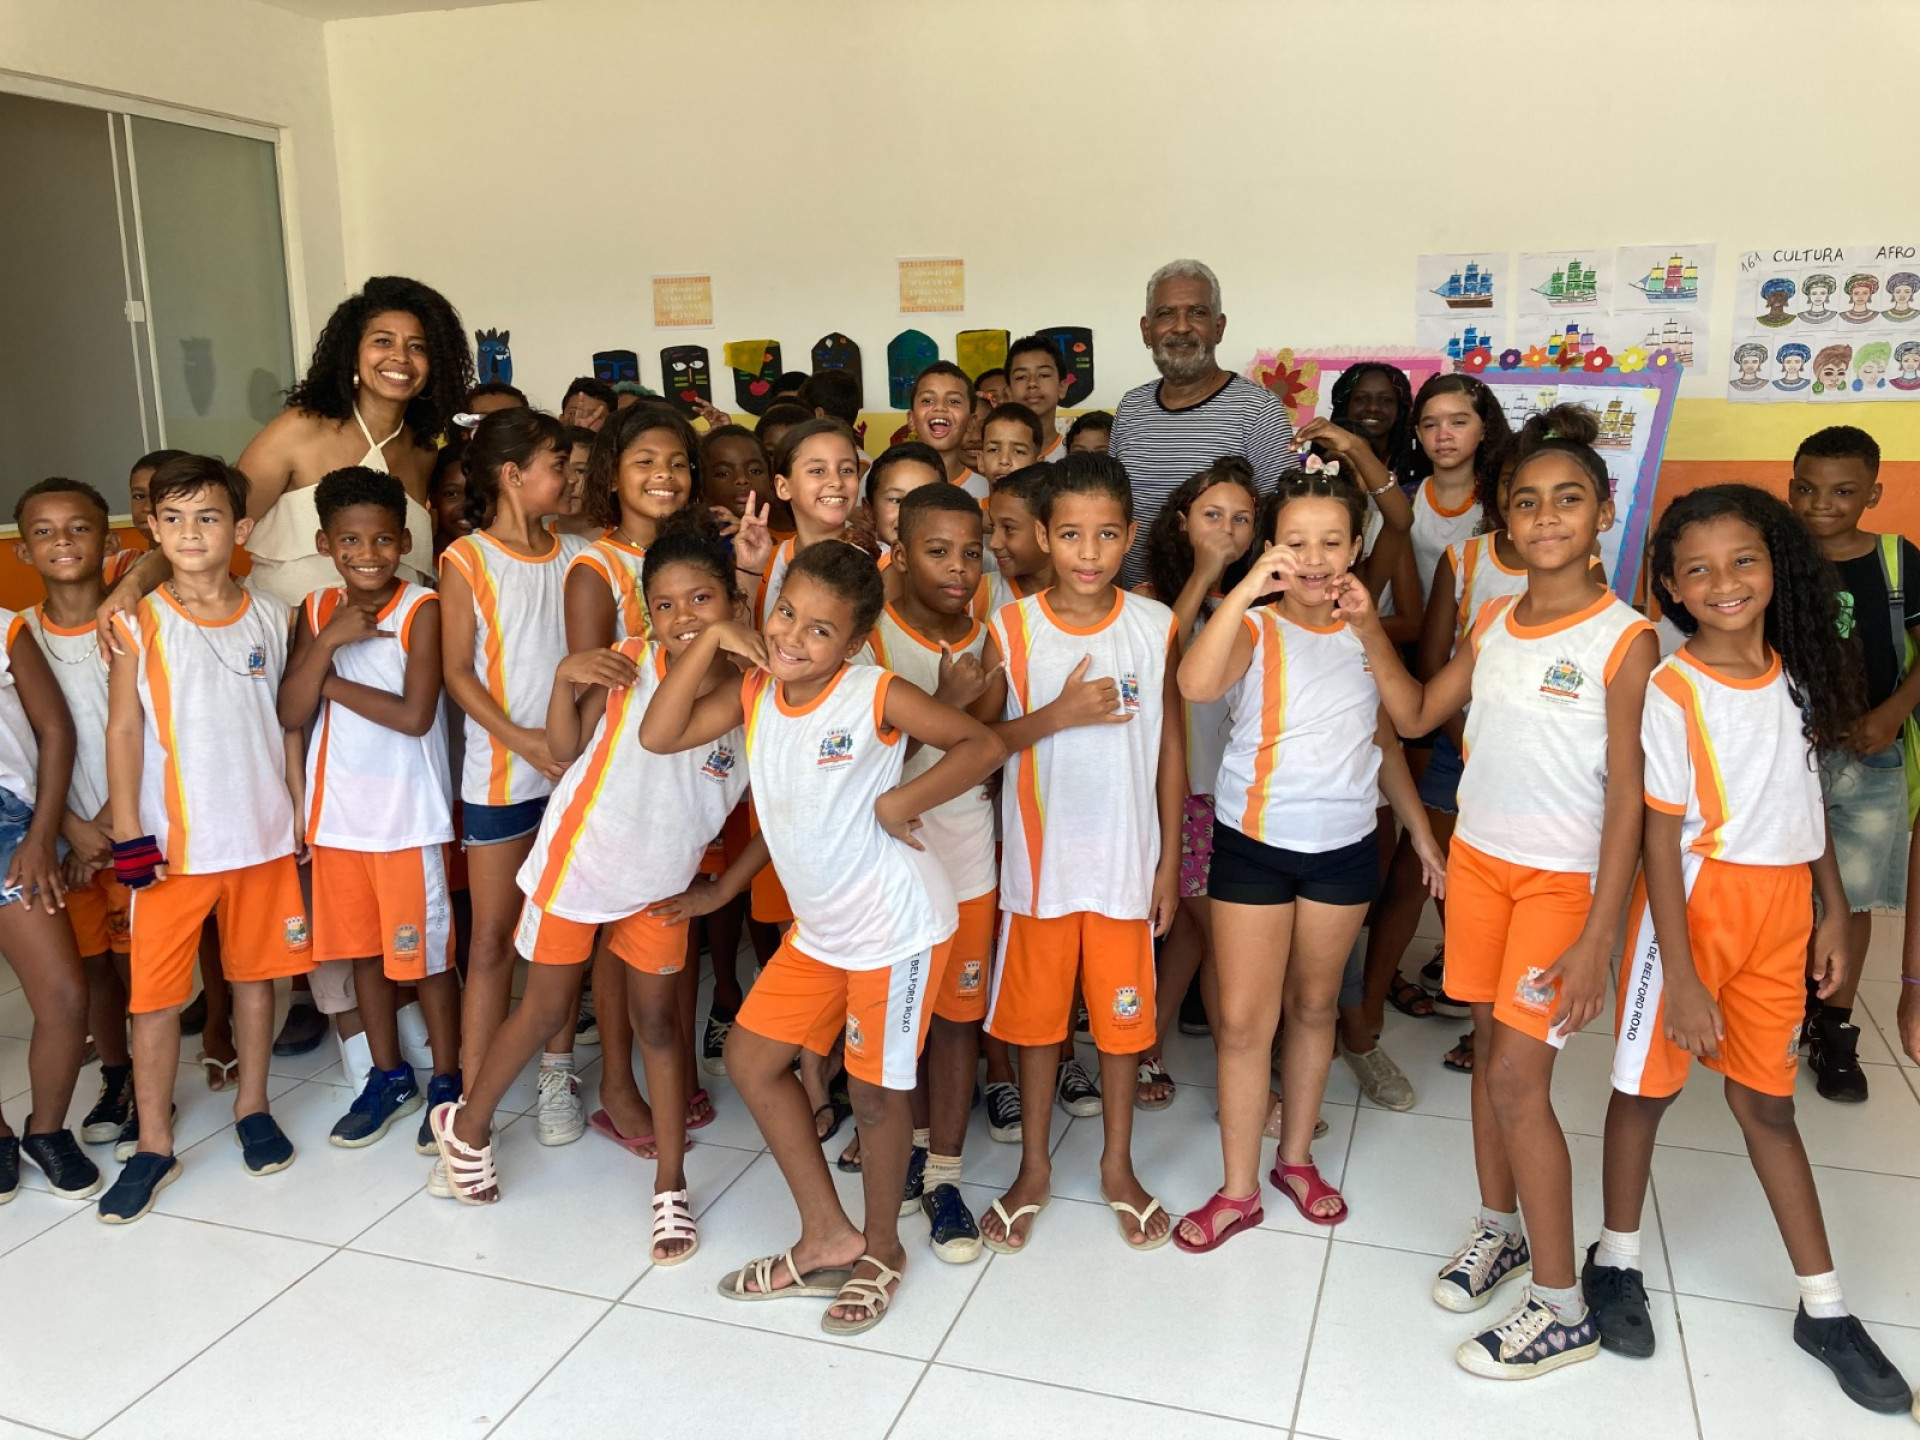 Secretária Enira Ranuzia, diretor Luciano Alves e alunos da Ayrton Senna participaram da exposição - Renan Marques/PMBR